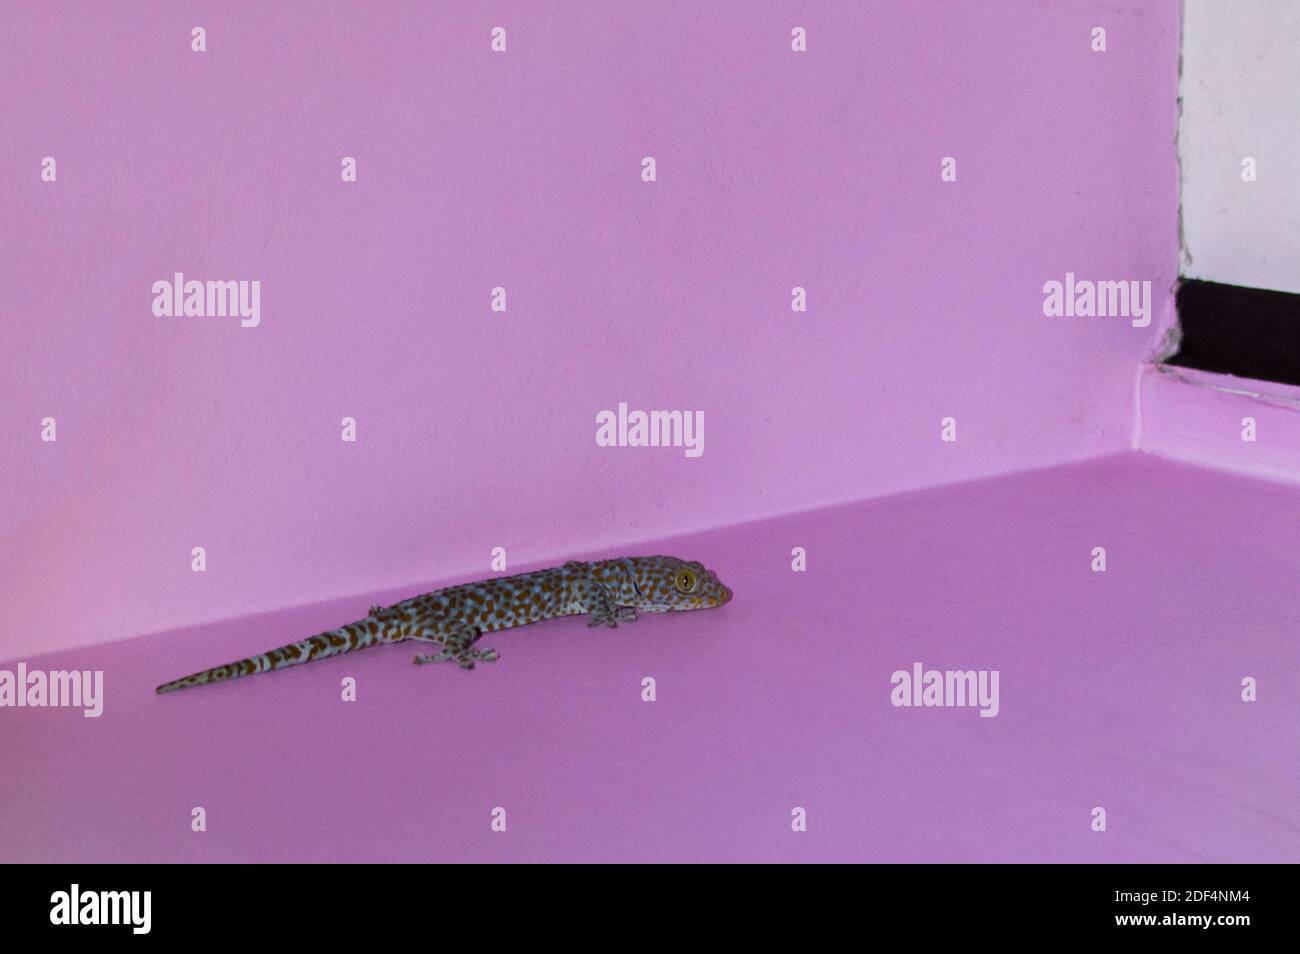 Closeup of a Tokay Gecko or Gecko gecko climbing on wall. Stock Photo